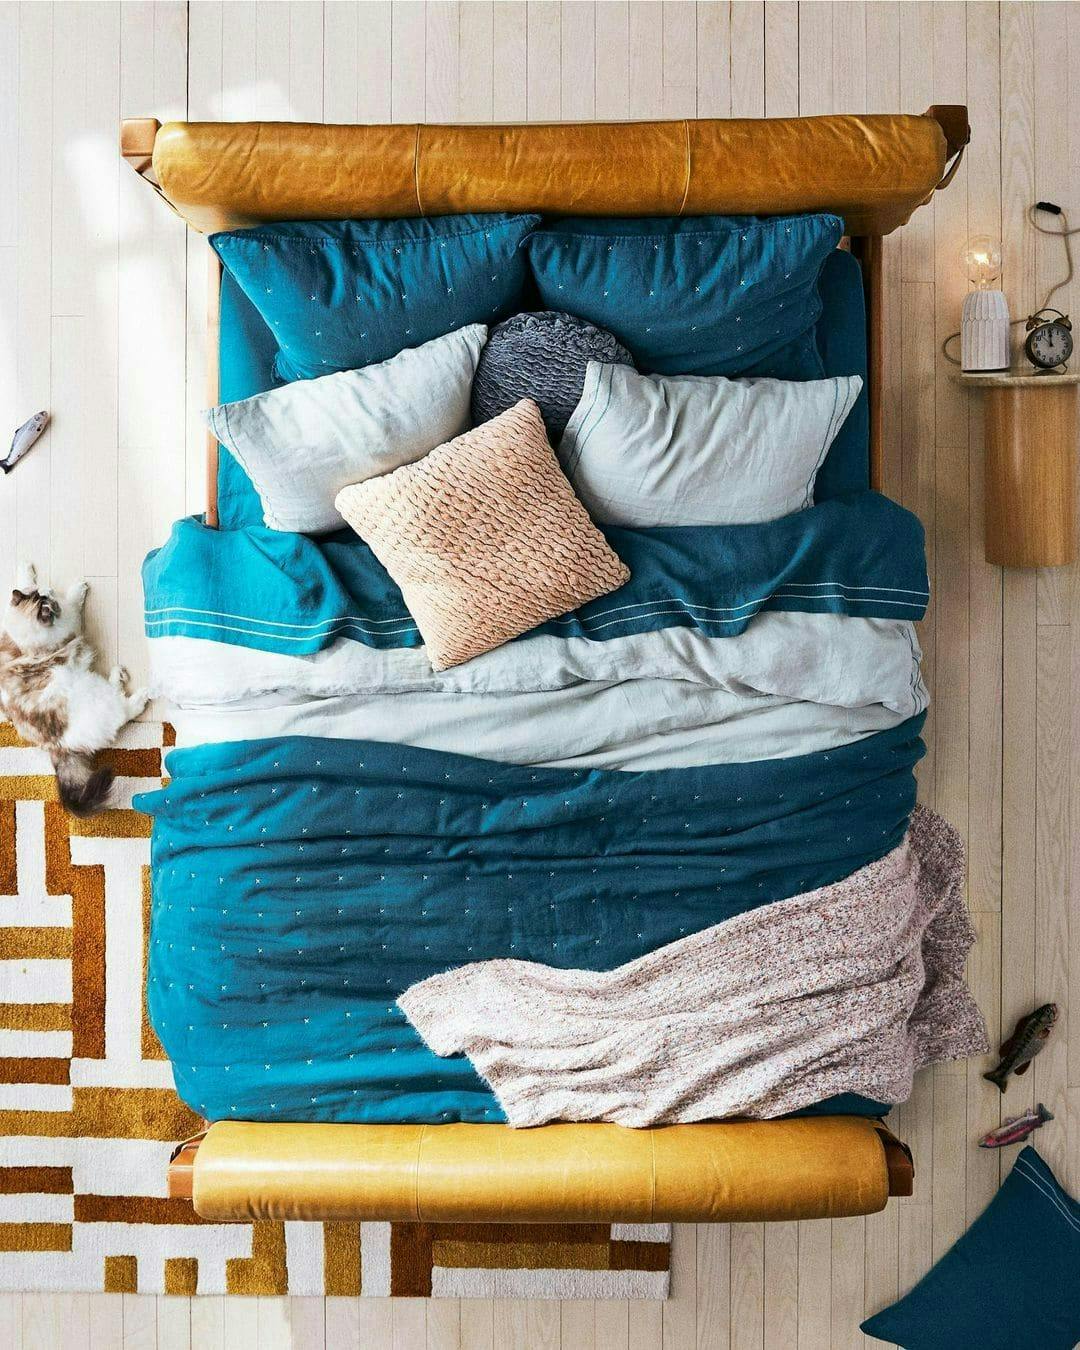 cómo decorar la cama con textiles